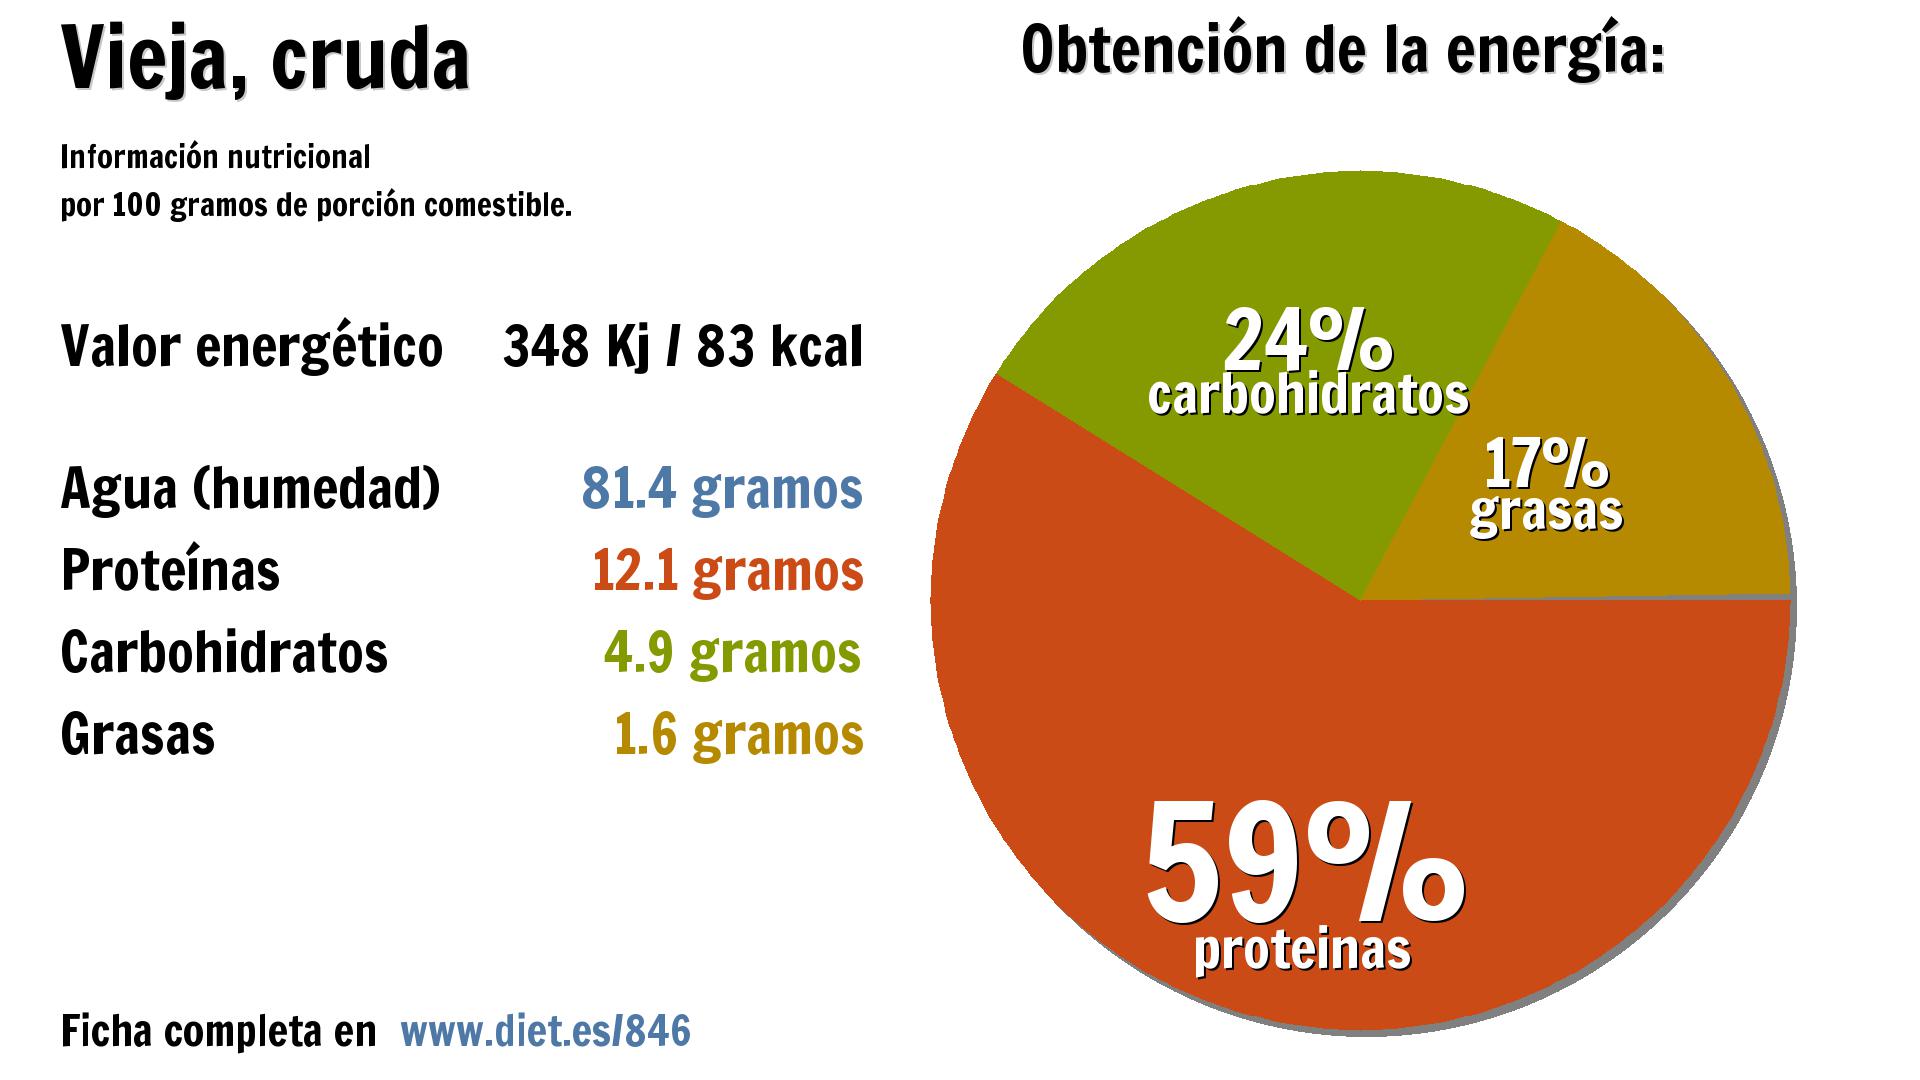 Vieja, cruda: energía 348 Kj, agua 81 g., proteínas 12 g., carbohidratos 5 g. y grasas 2 g.